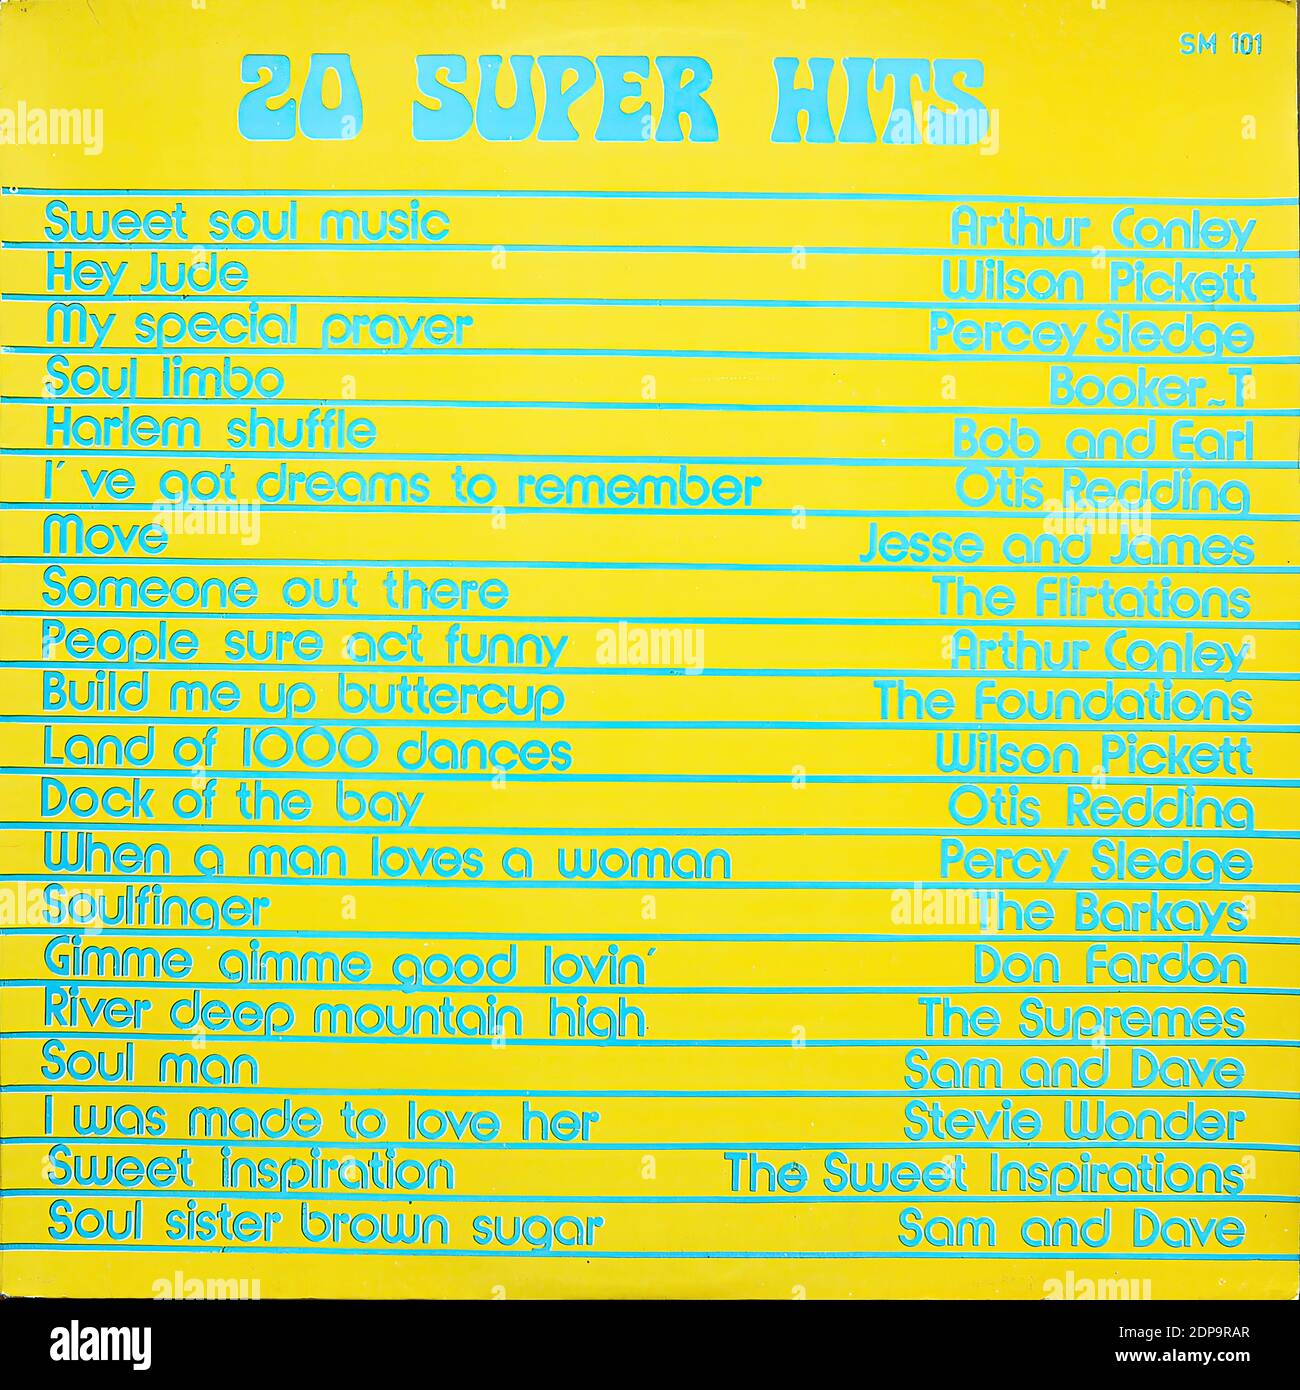 Soul Music - 20 Super Hits, SM 101  - Vintage vinyl album cover Stock Photo